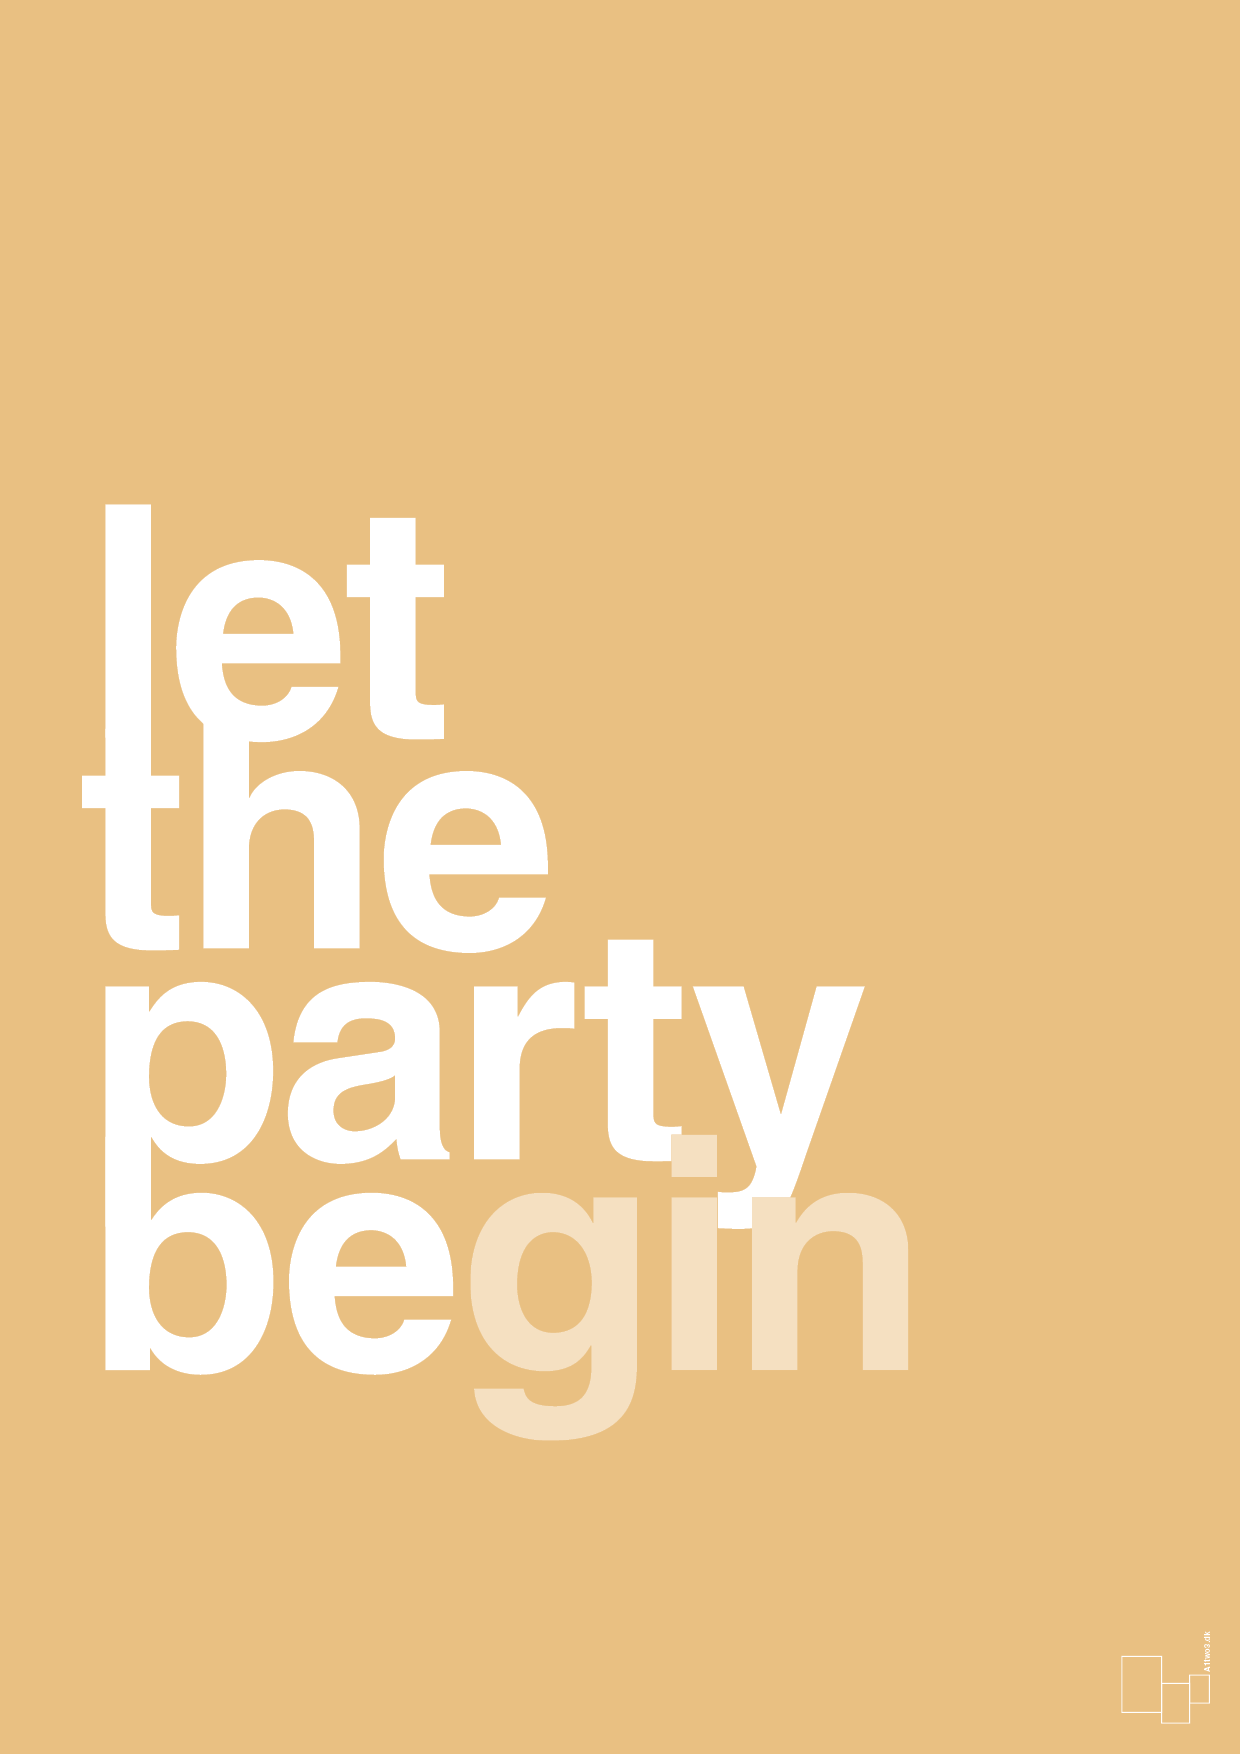 let the party begin - Plakat med Ordsprog i Charismatic